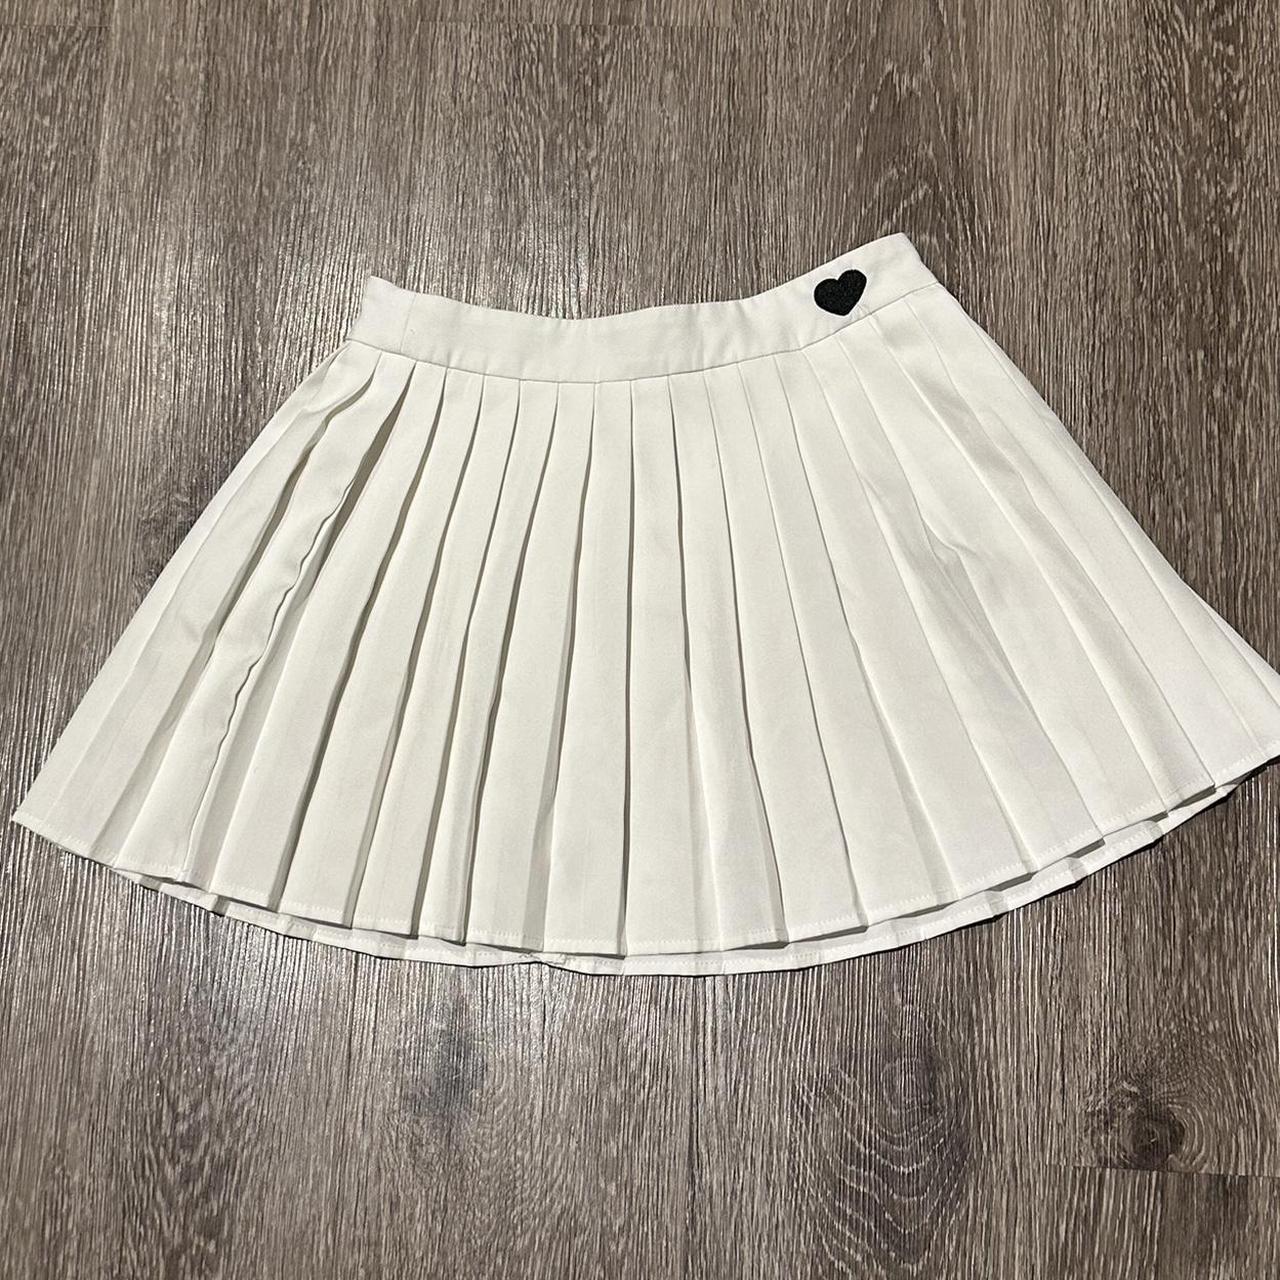 Shein tennis skirt -cute heart detail - Depop